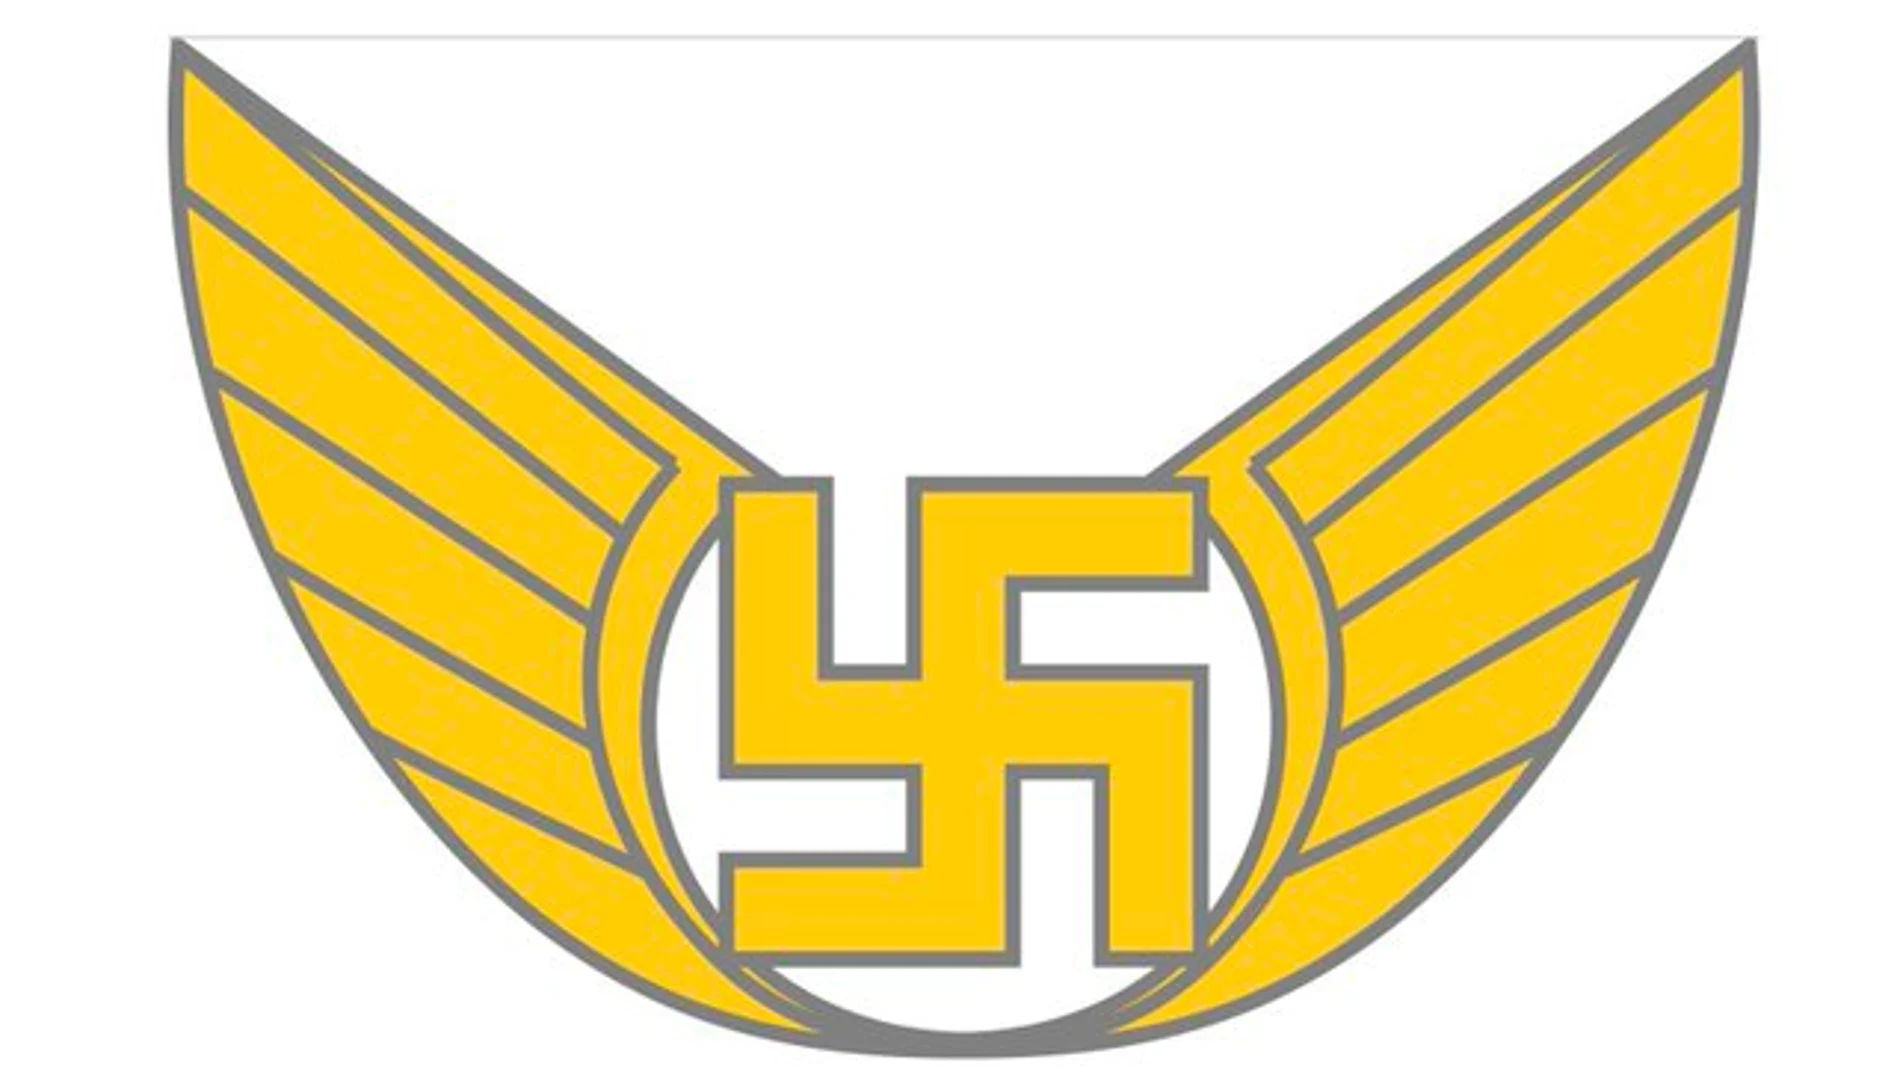 Imagen del emblema de las fuerzas aéreas de Finlandia, con una esvástica